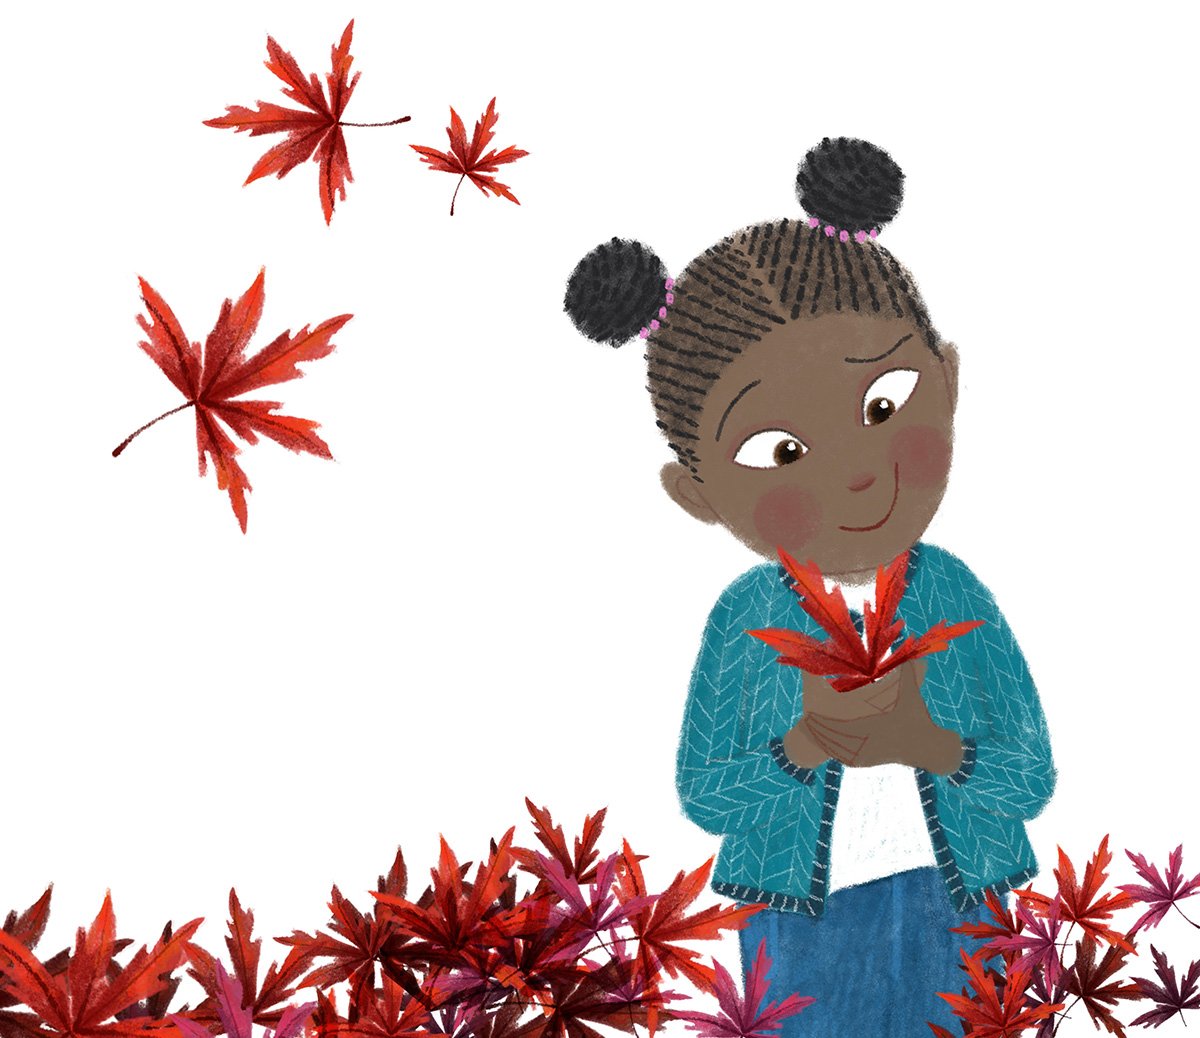 kim-geyer-autumn-leaves-girl-illustration.jpg